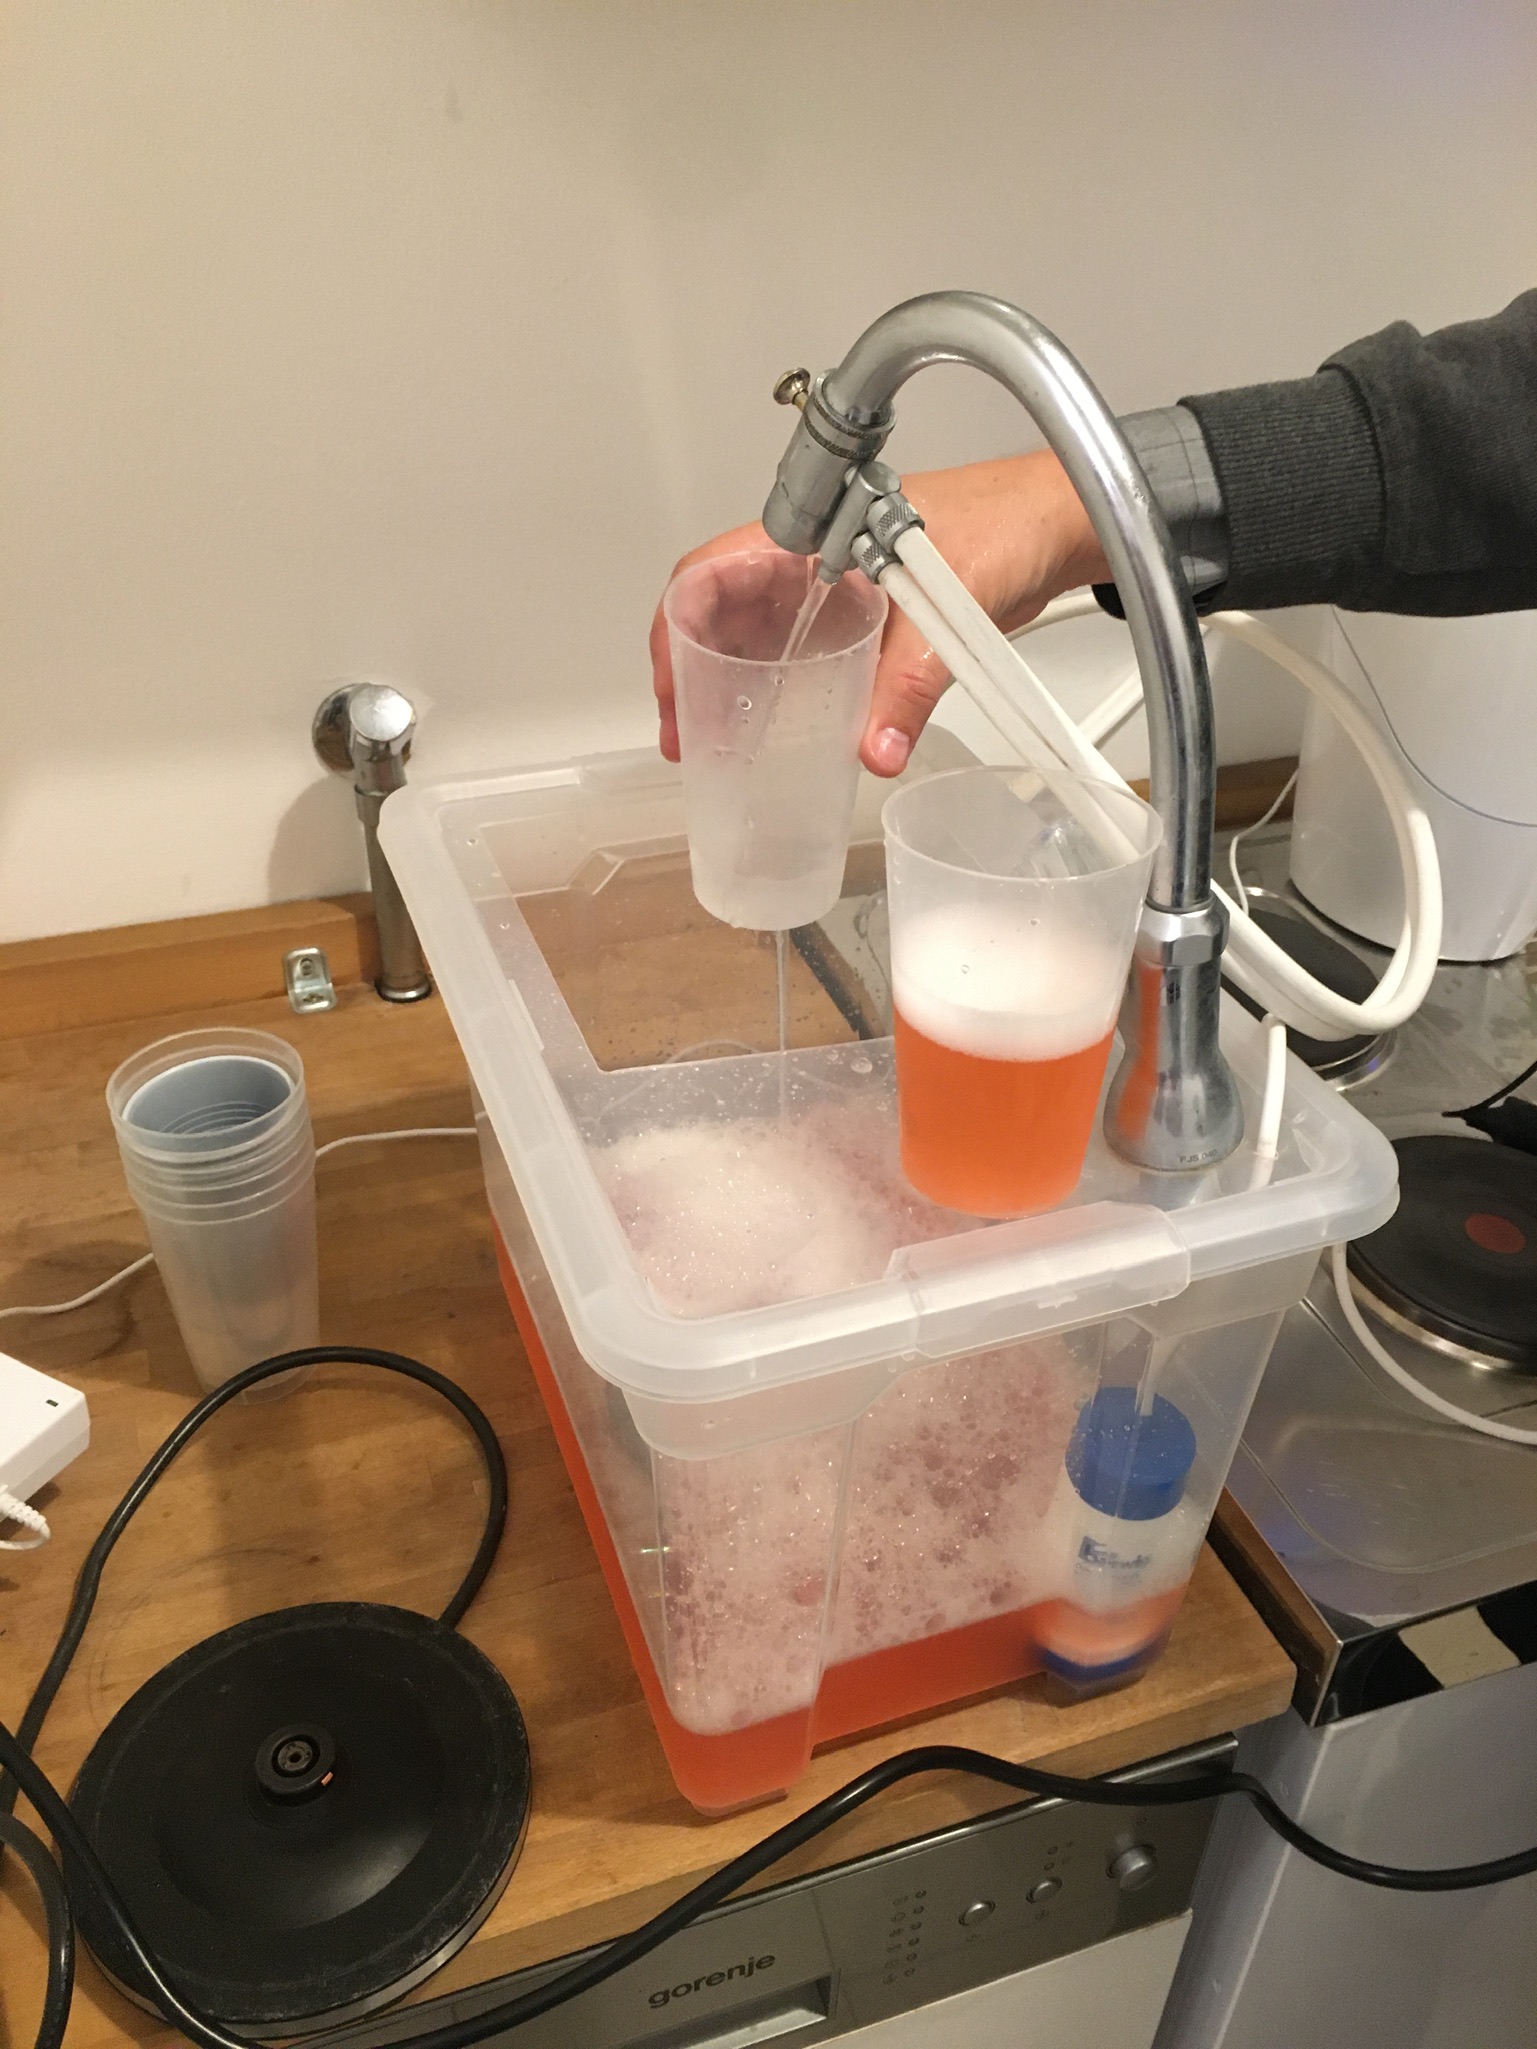 man sieht einen Behälter mit orangener Flüssigkeit, 2 Becher, 2 Schläuche und das gefärbte Wasser kommt am anderen Ende gefiltert und klar heraus.